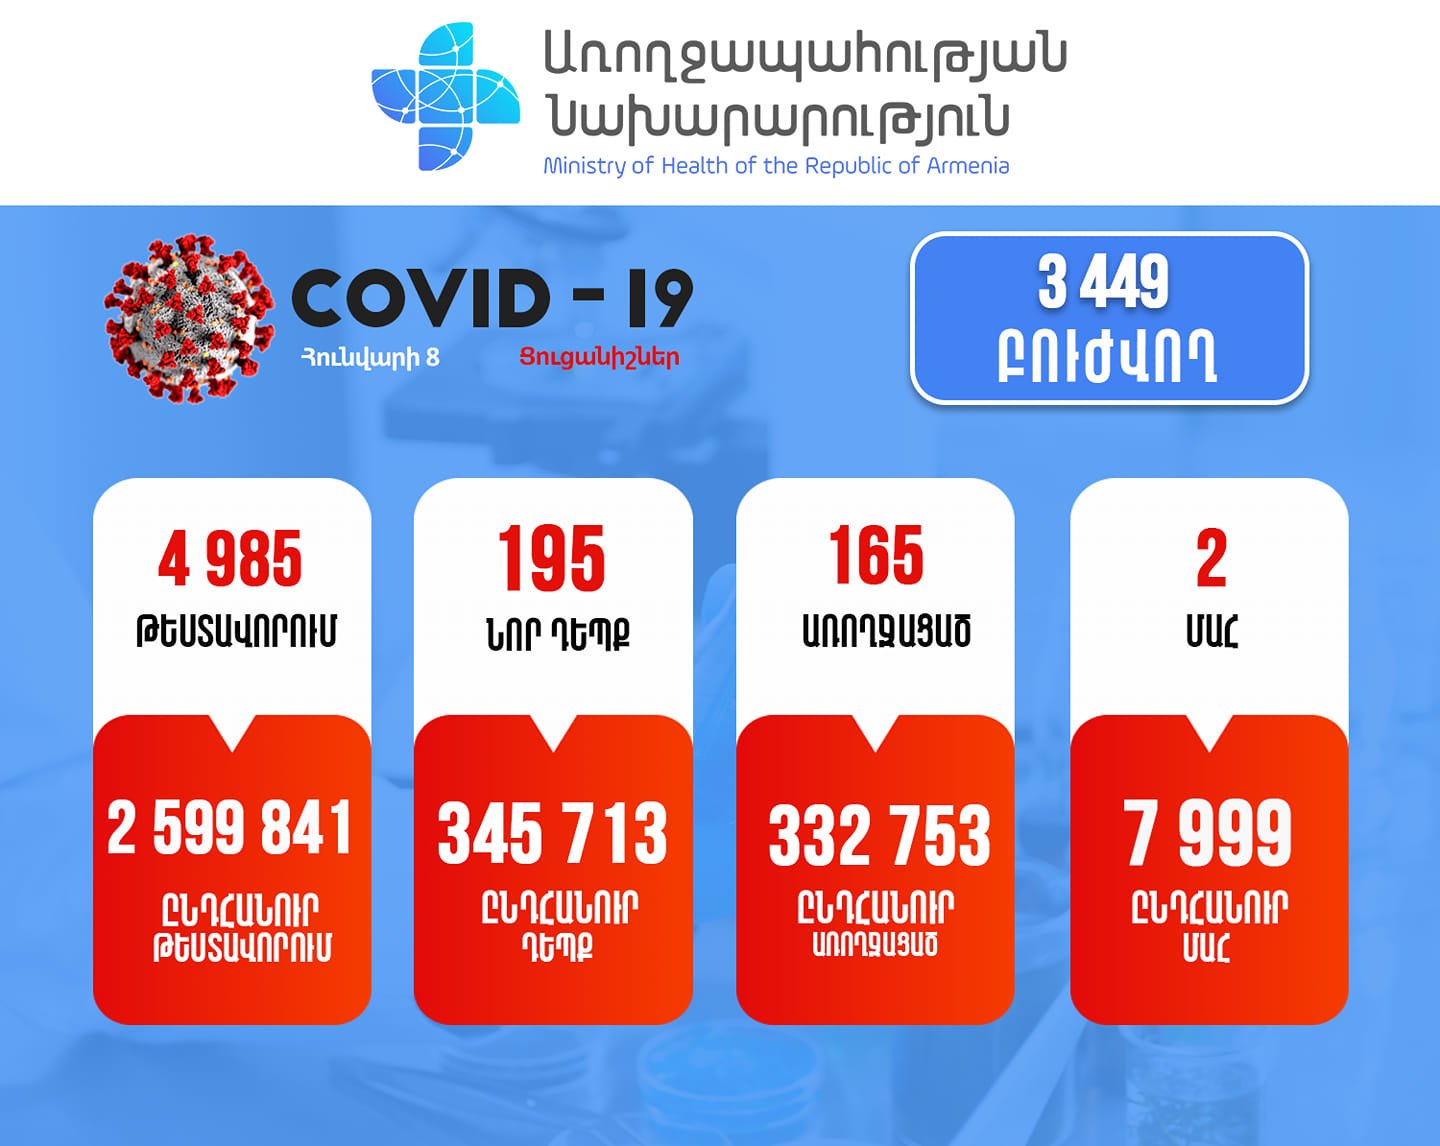 Ситуация с коронавирусом в Армении: 195 новых случаев, 2 летальных исхода